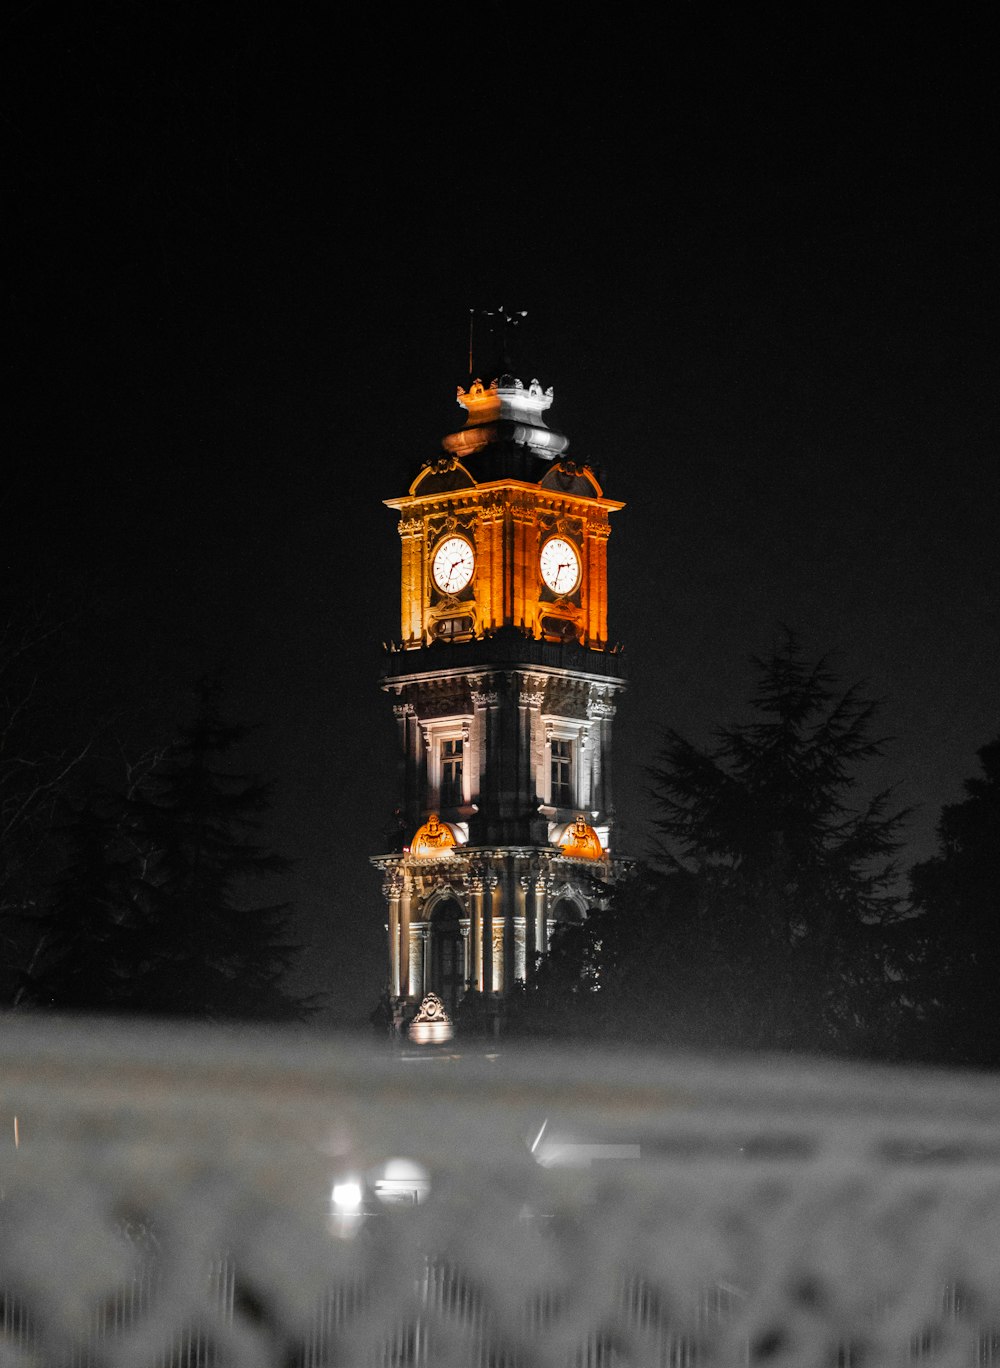 una grande torre dell'orologio illuminata di notte